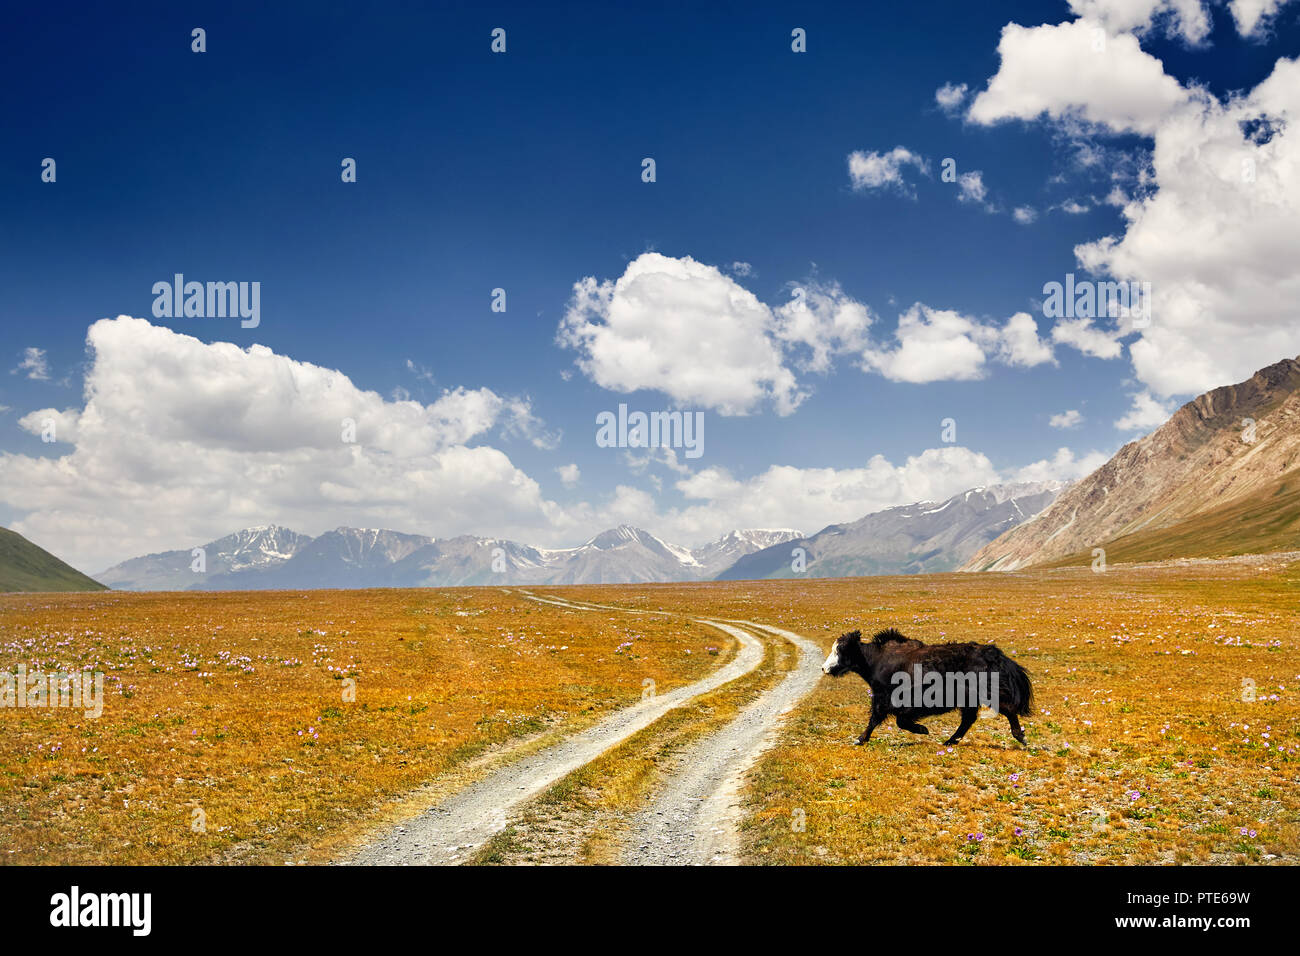 Black Yak cruzar la carretera en el valle de montaña de Kirguistán, Asia Central Foto de stock